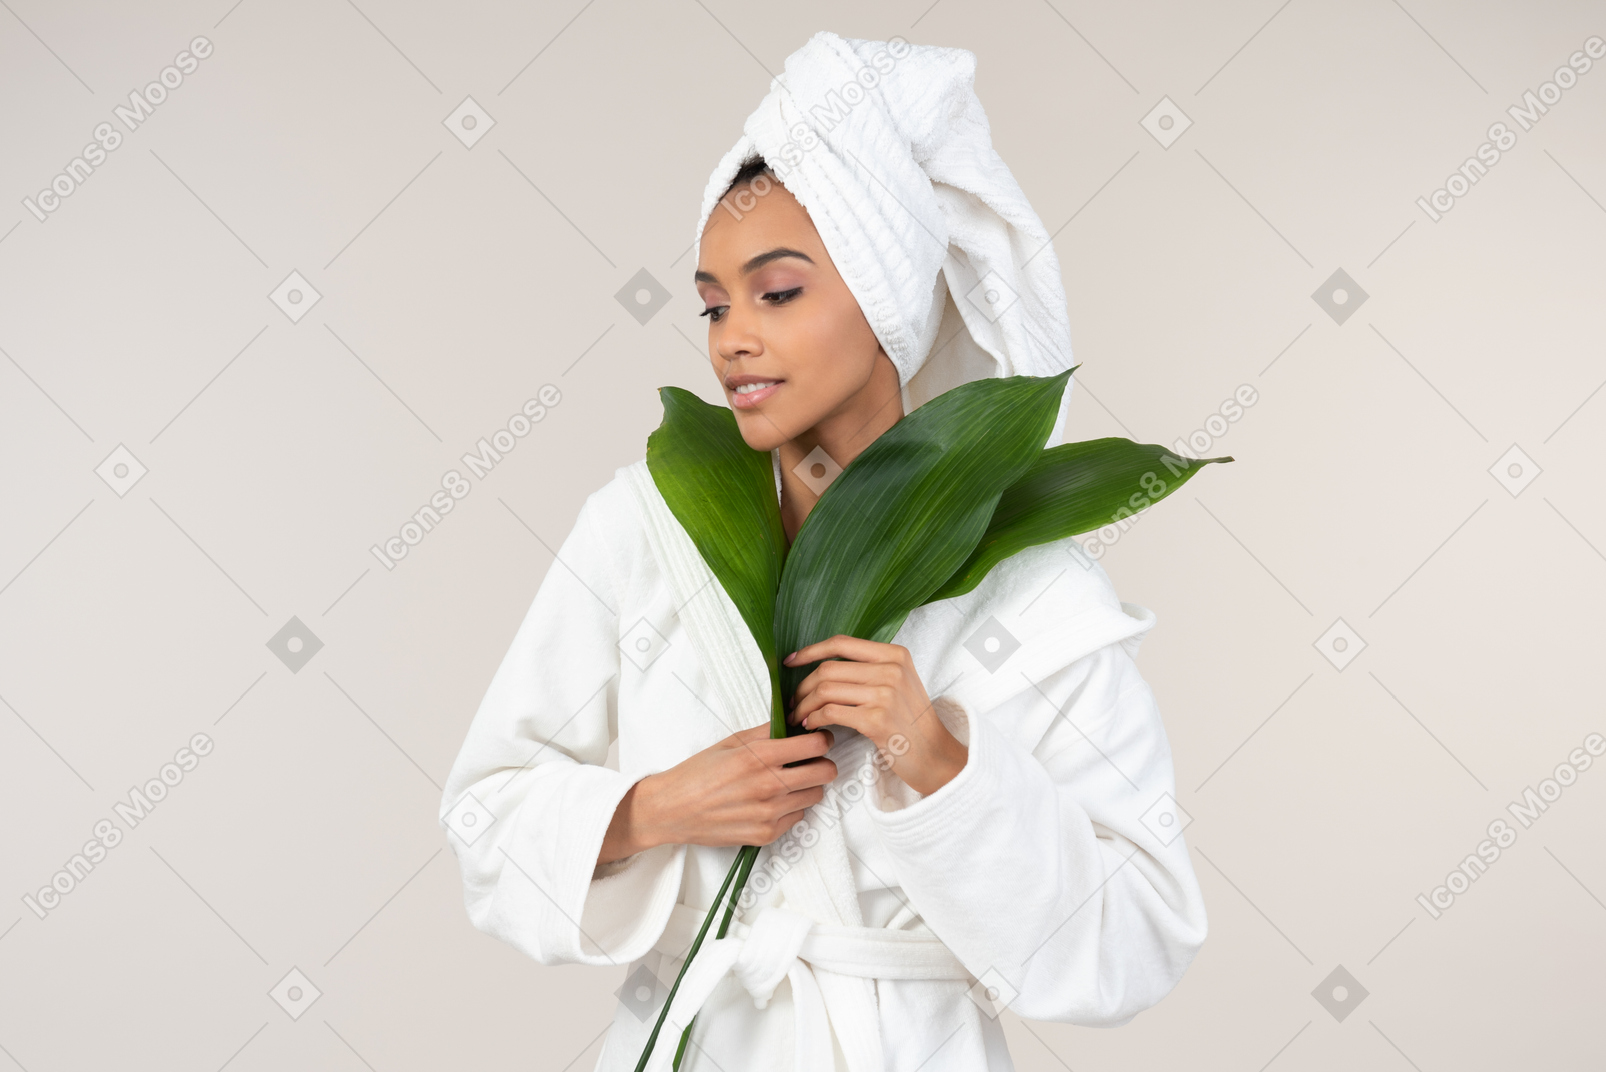 白色浴袍和头巾的黑人妇女享受她的护肤惯例